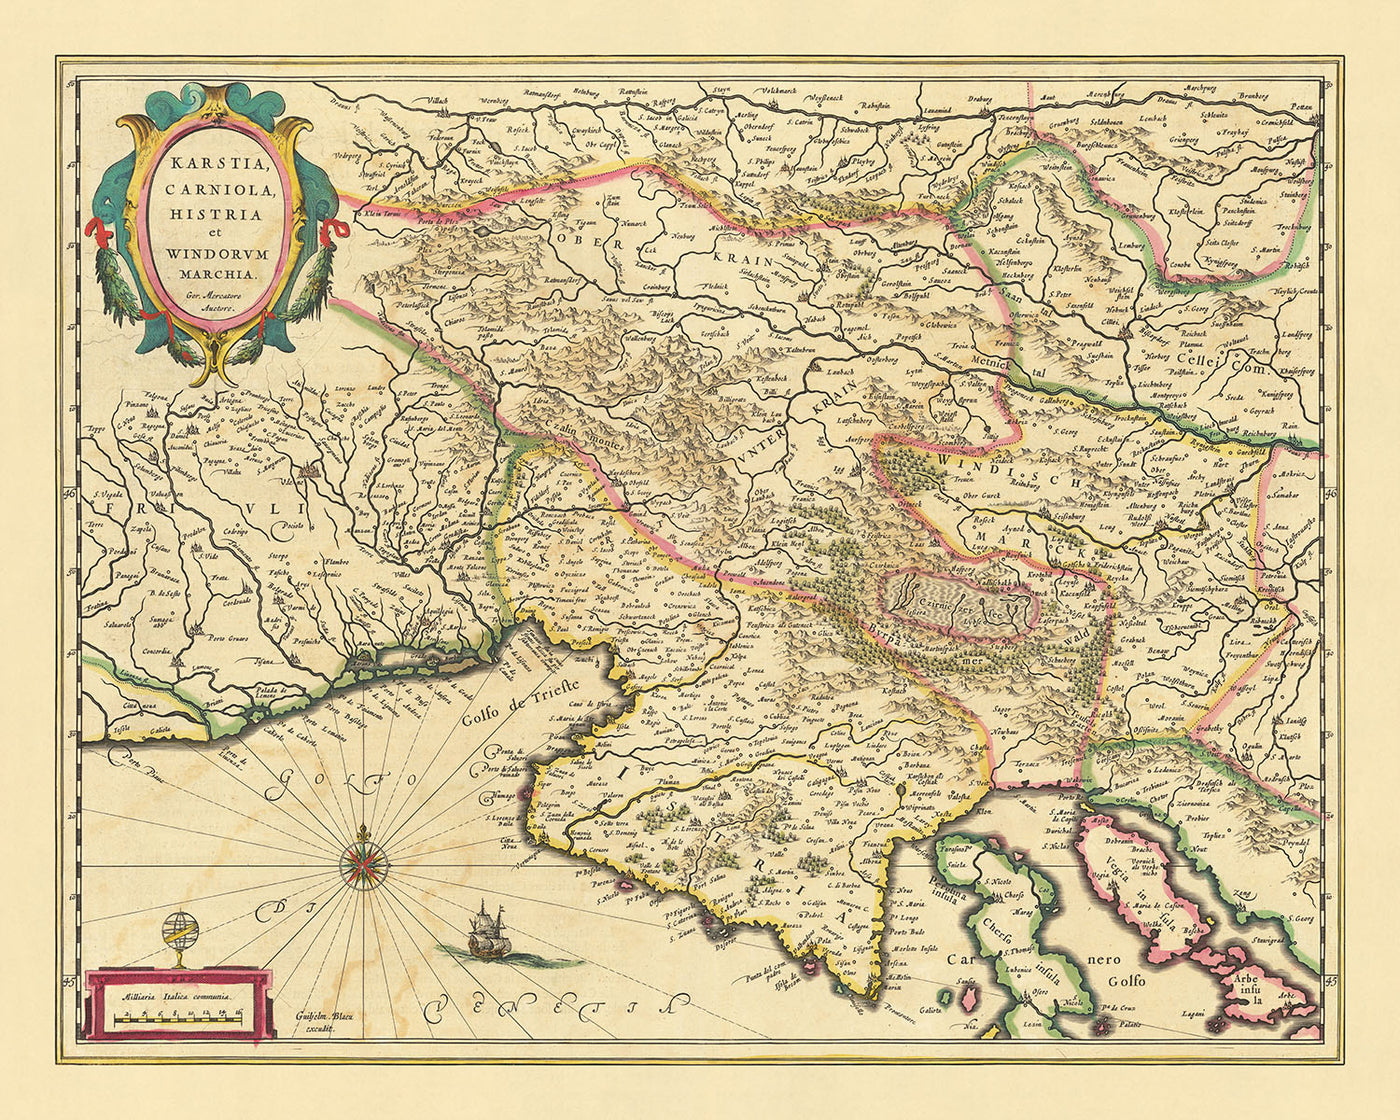 Ancienne carte détaillée de la Slovénie, de la Croatie et de l'Italie par Blaeu, 1640 : mer Adriatique, golfe de Venise, Ljubljana, Trieste, plateau karstique